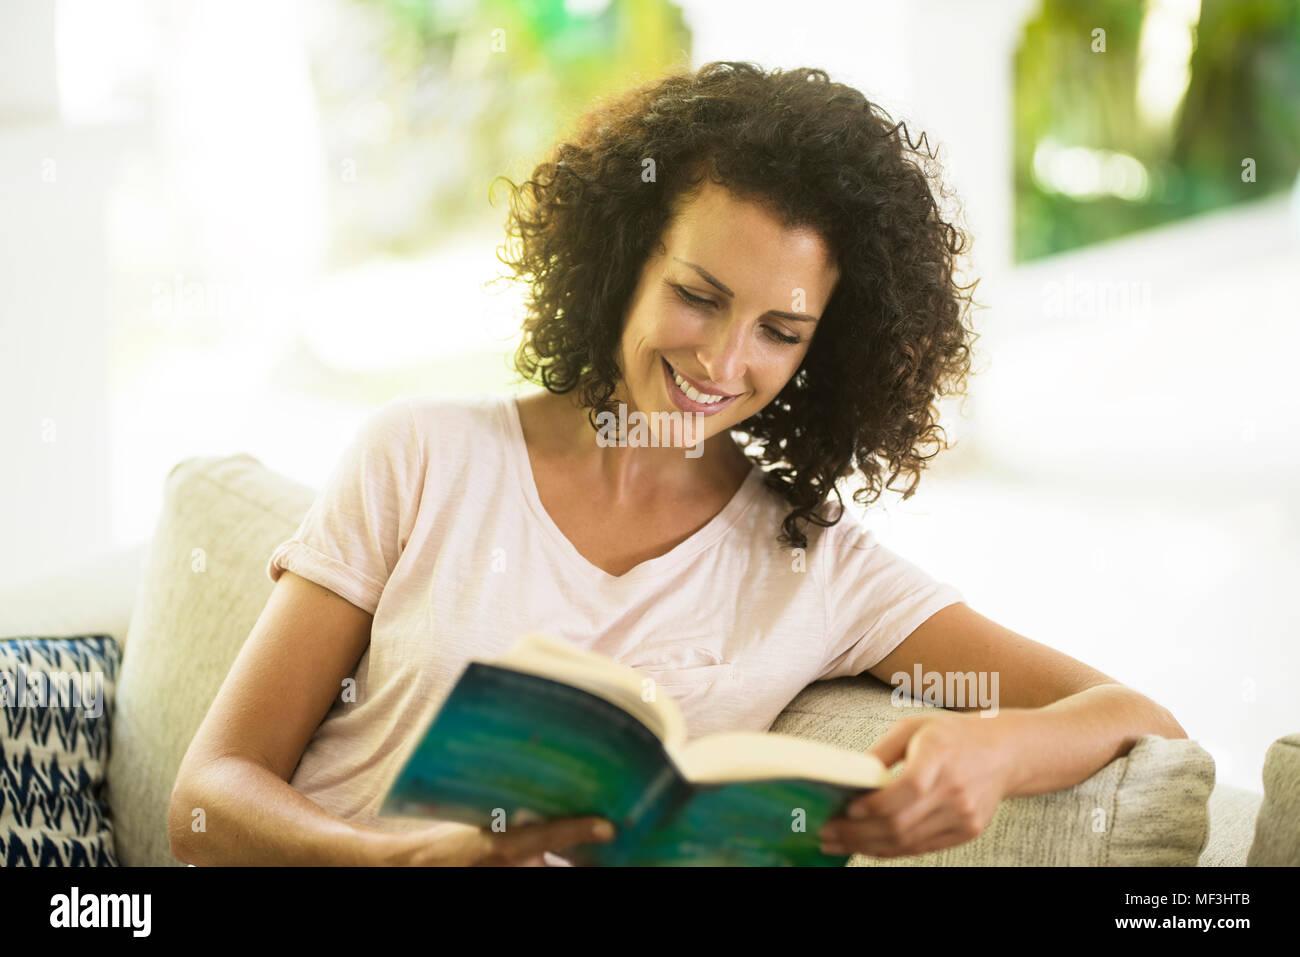 Lächelnde Frau mit lockigem Haar ein Buch lesen Stockfoto